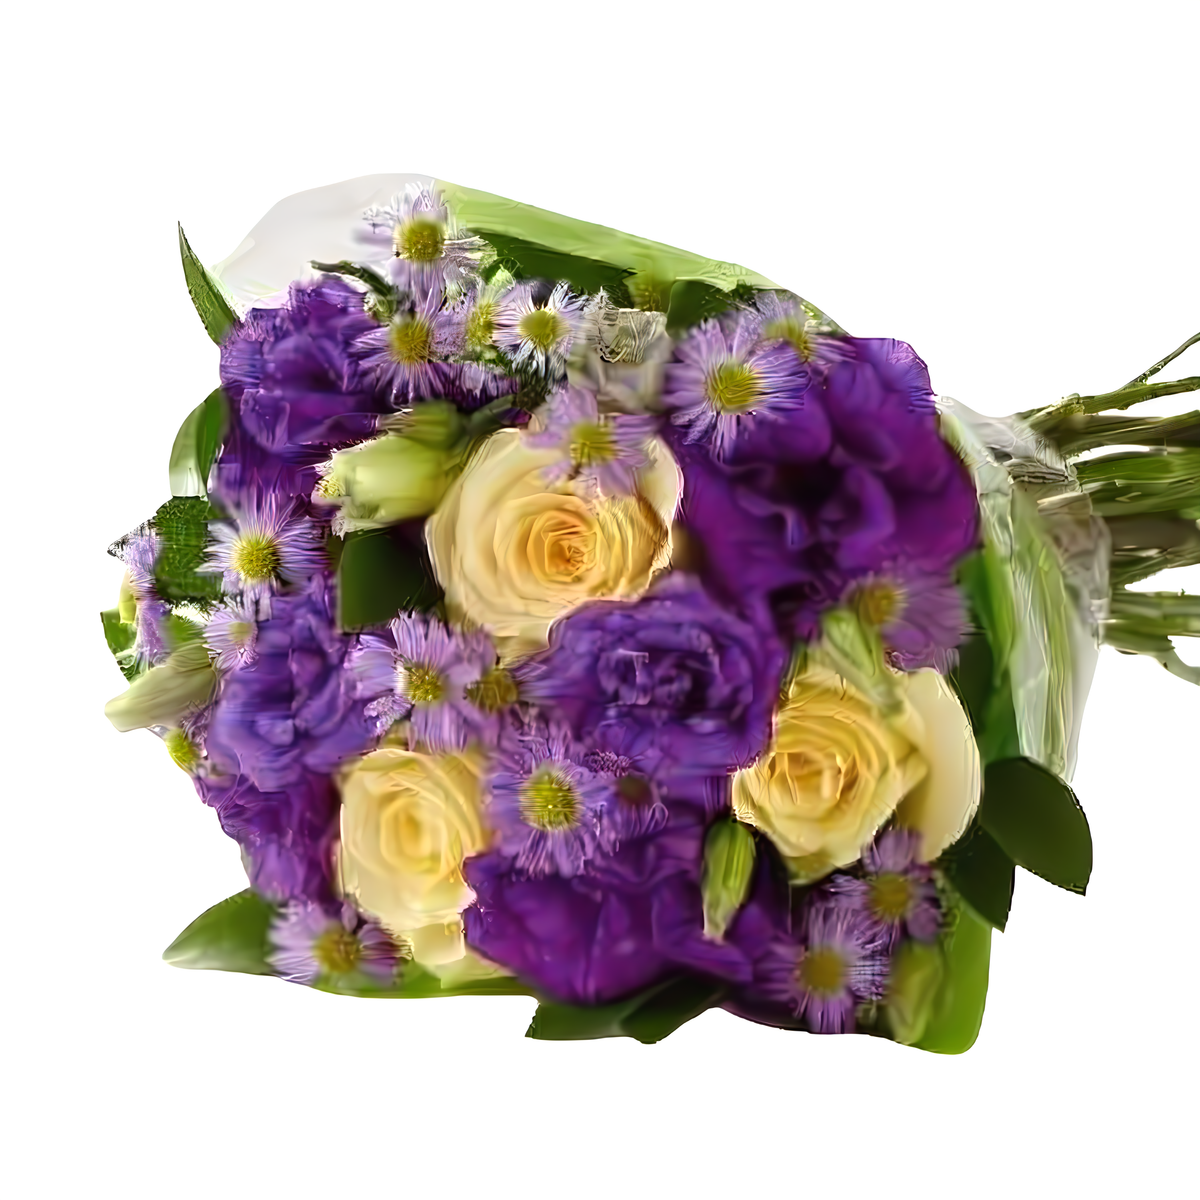 Manhattan Flower Delivery - The Central Park Bouquet - Birthdays